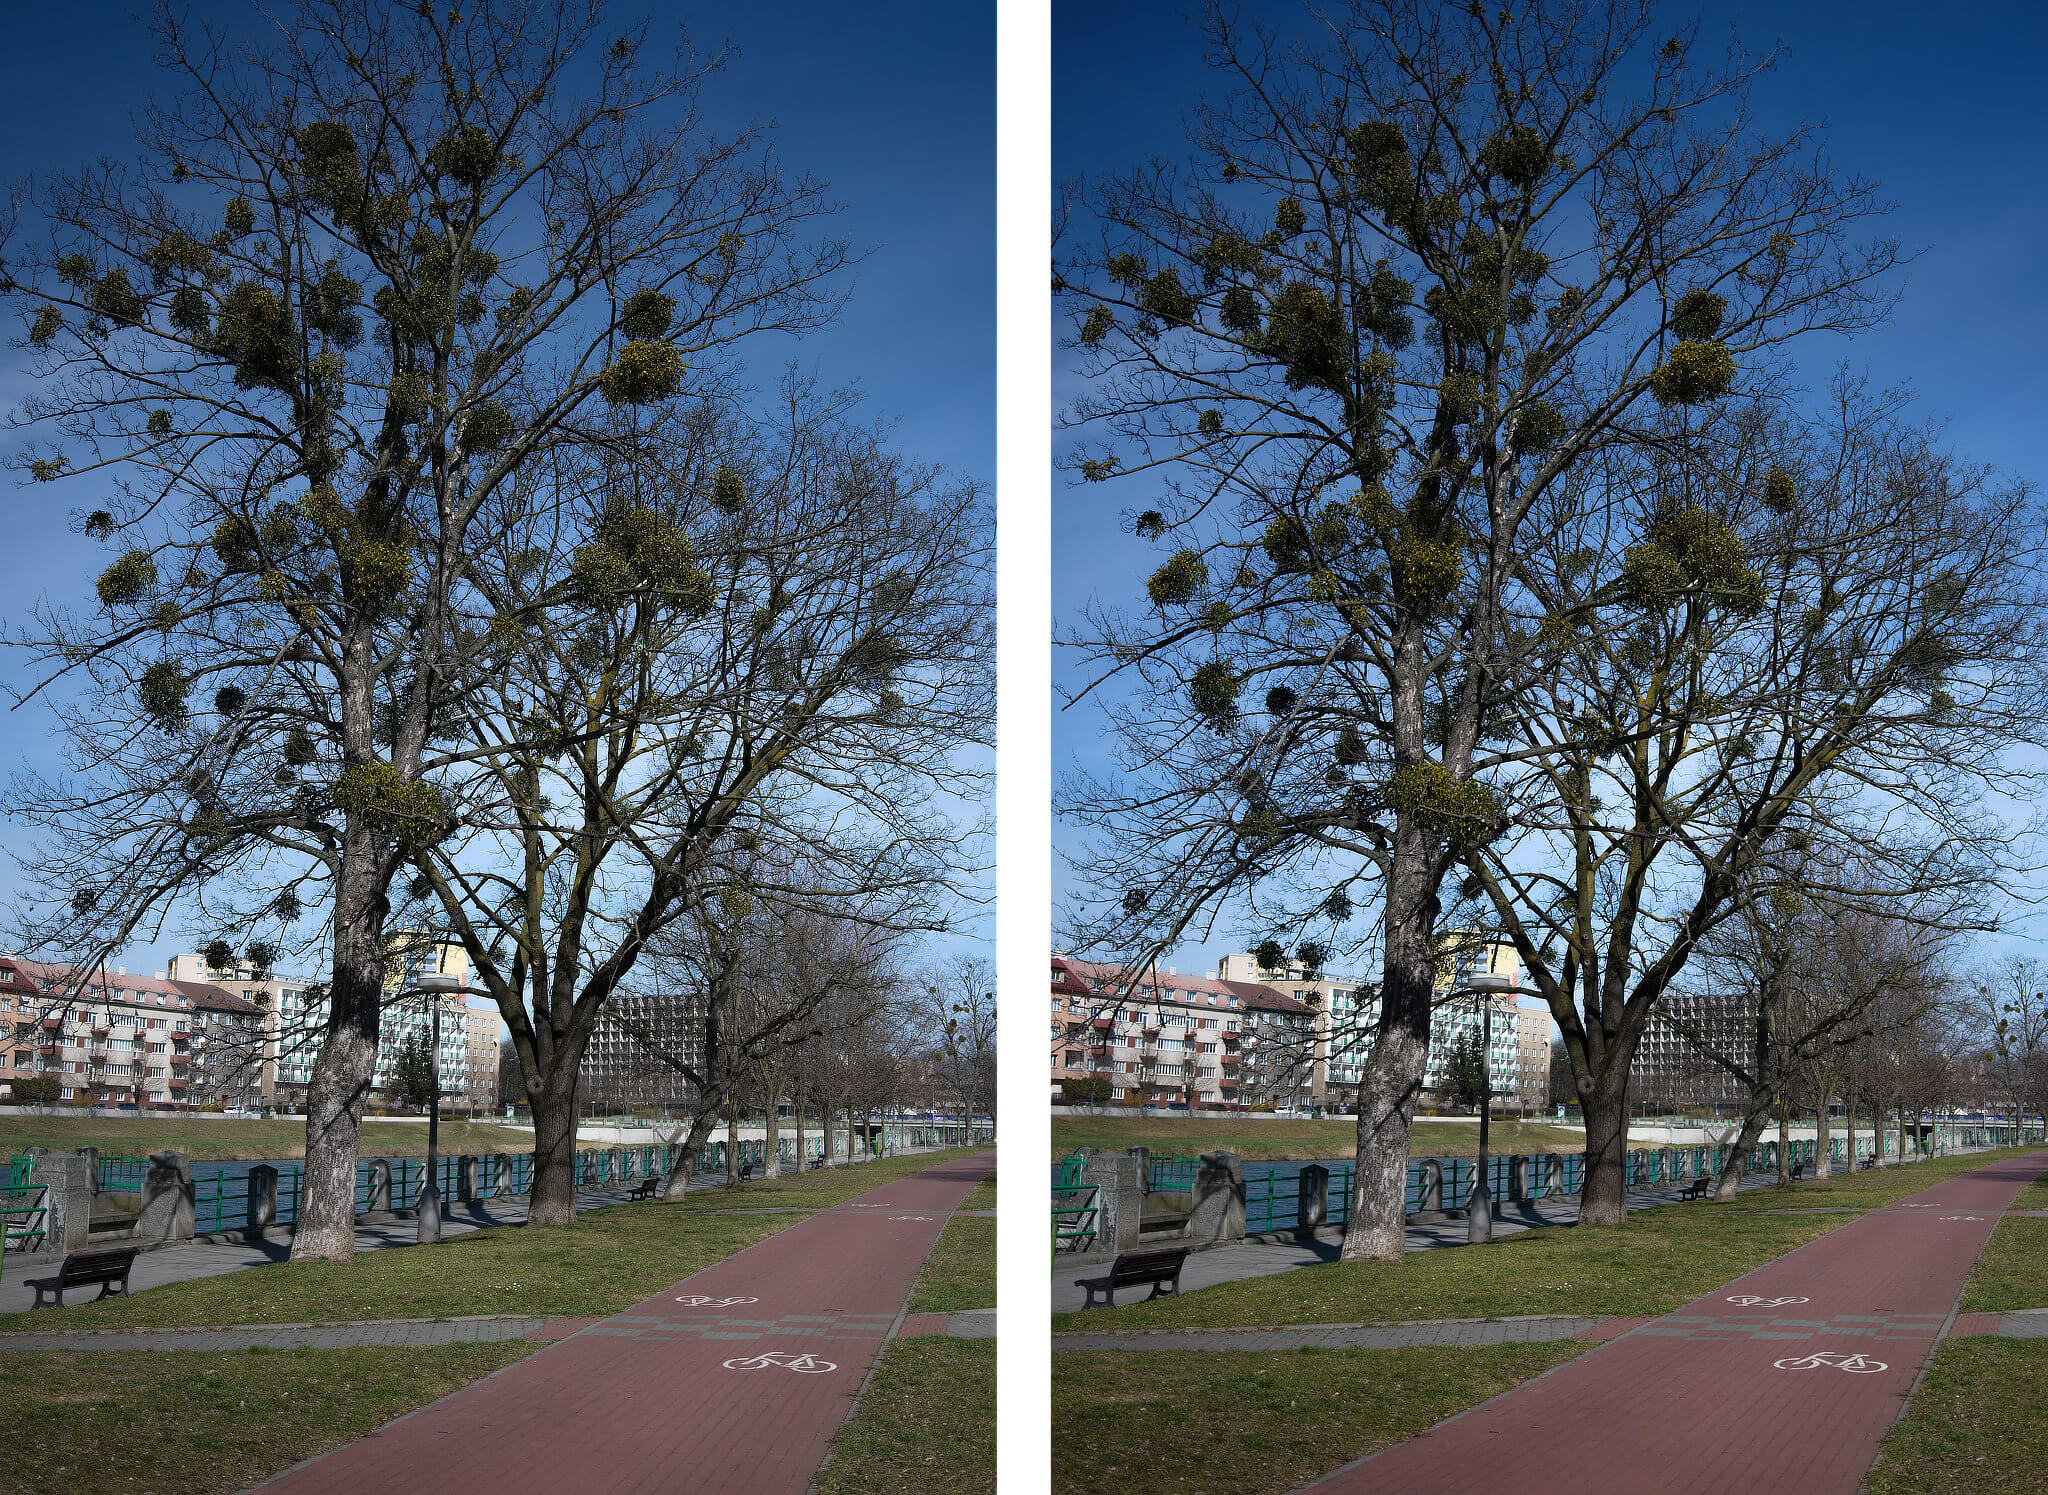 Reálná fotografie vs. LUT „Živé barvy“ v Zoner Photo Studiu X. Realistická LUT pouze zvýší sytost barev (Otázkou je, zdali je k takové úpravě potřeba LUT…)